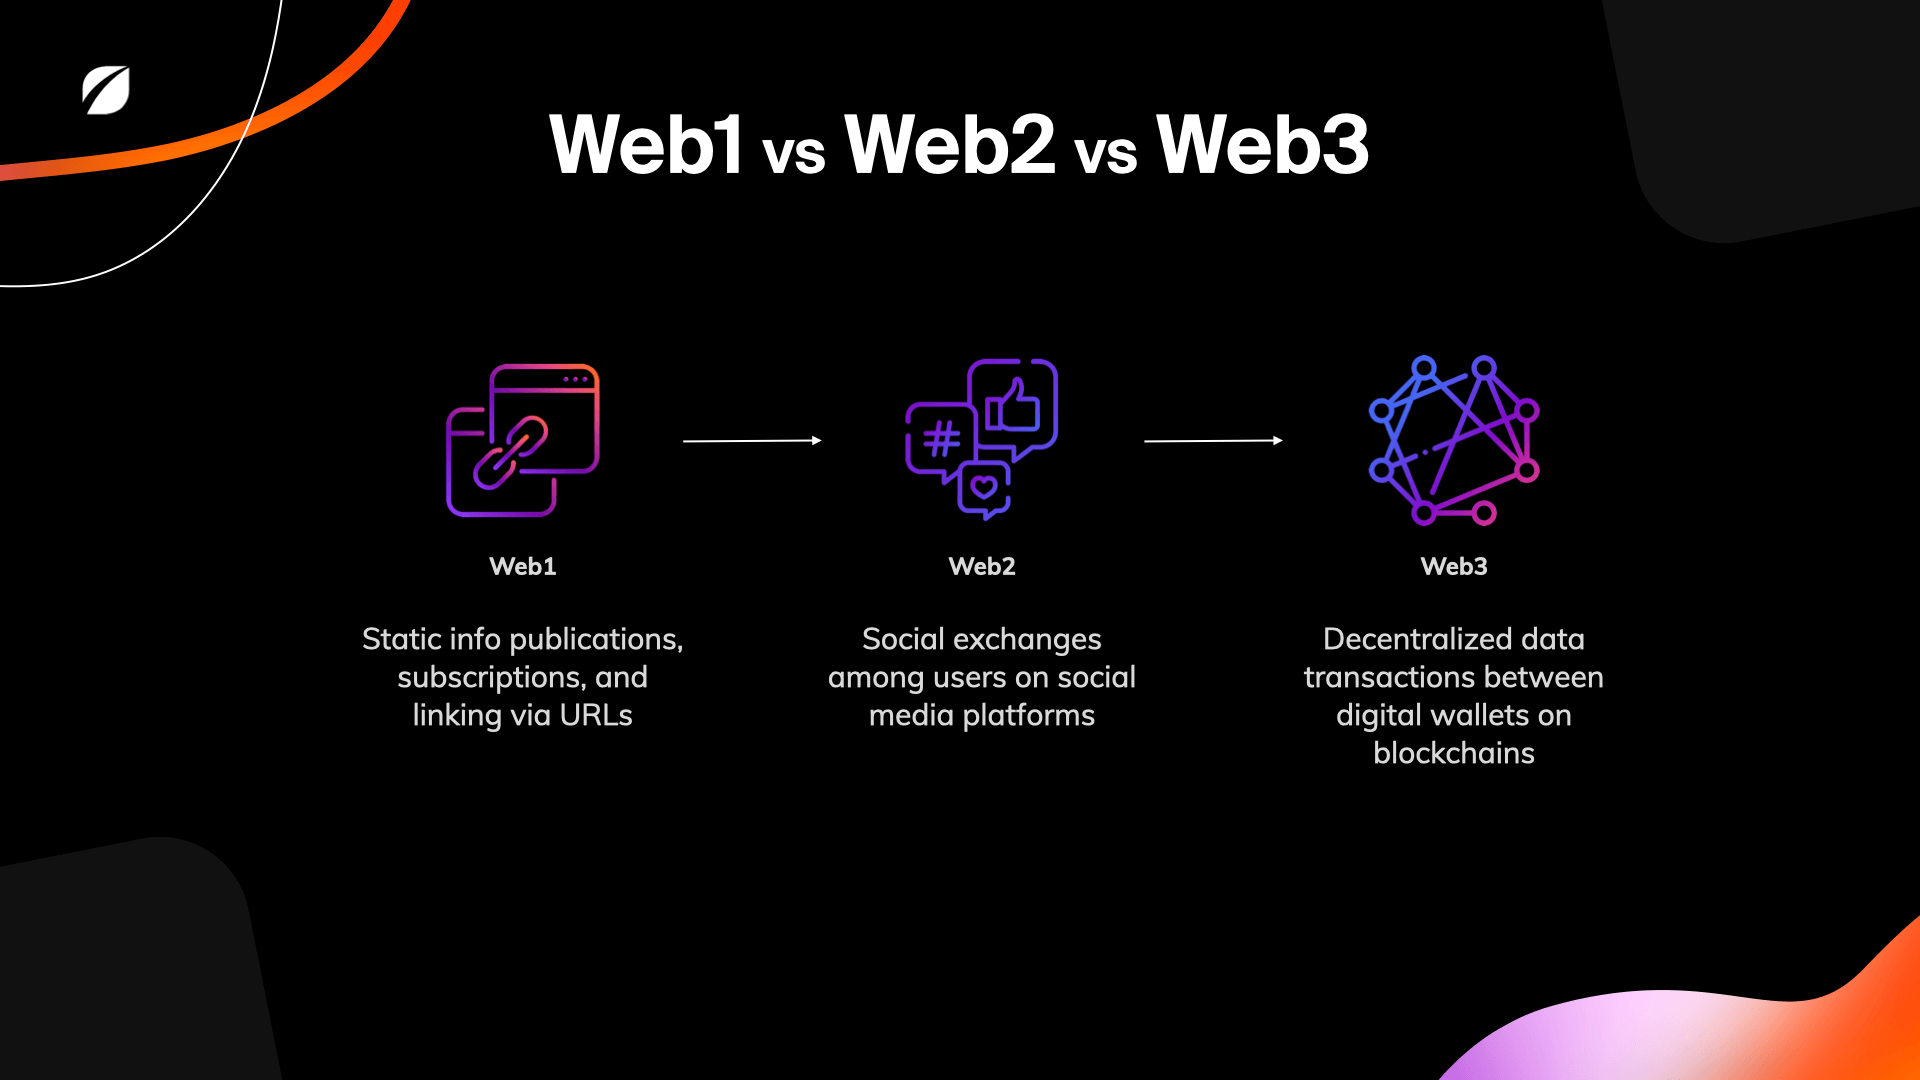 Web1 to Web3